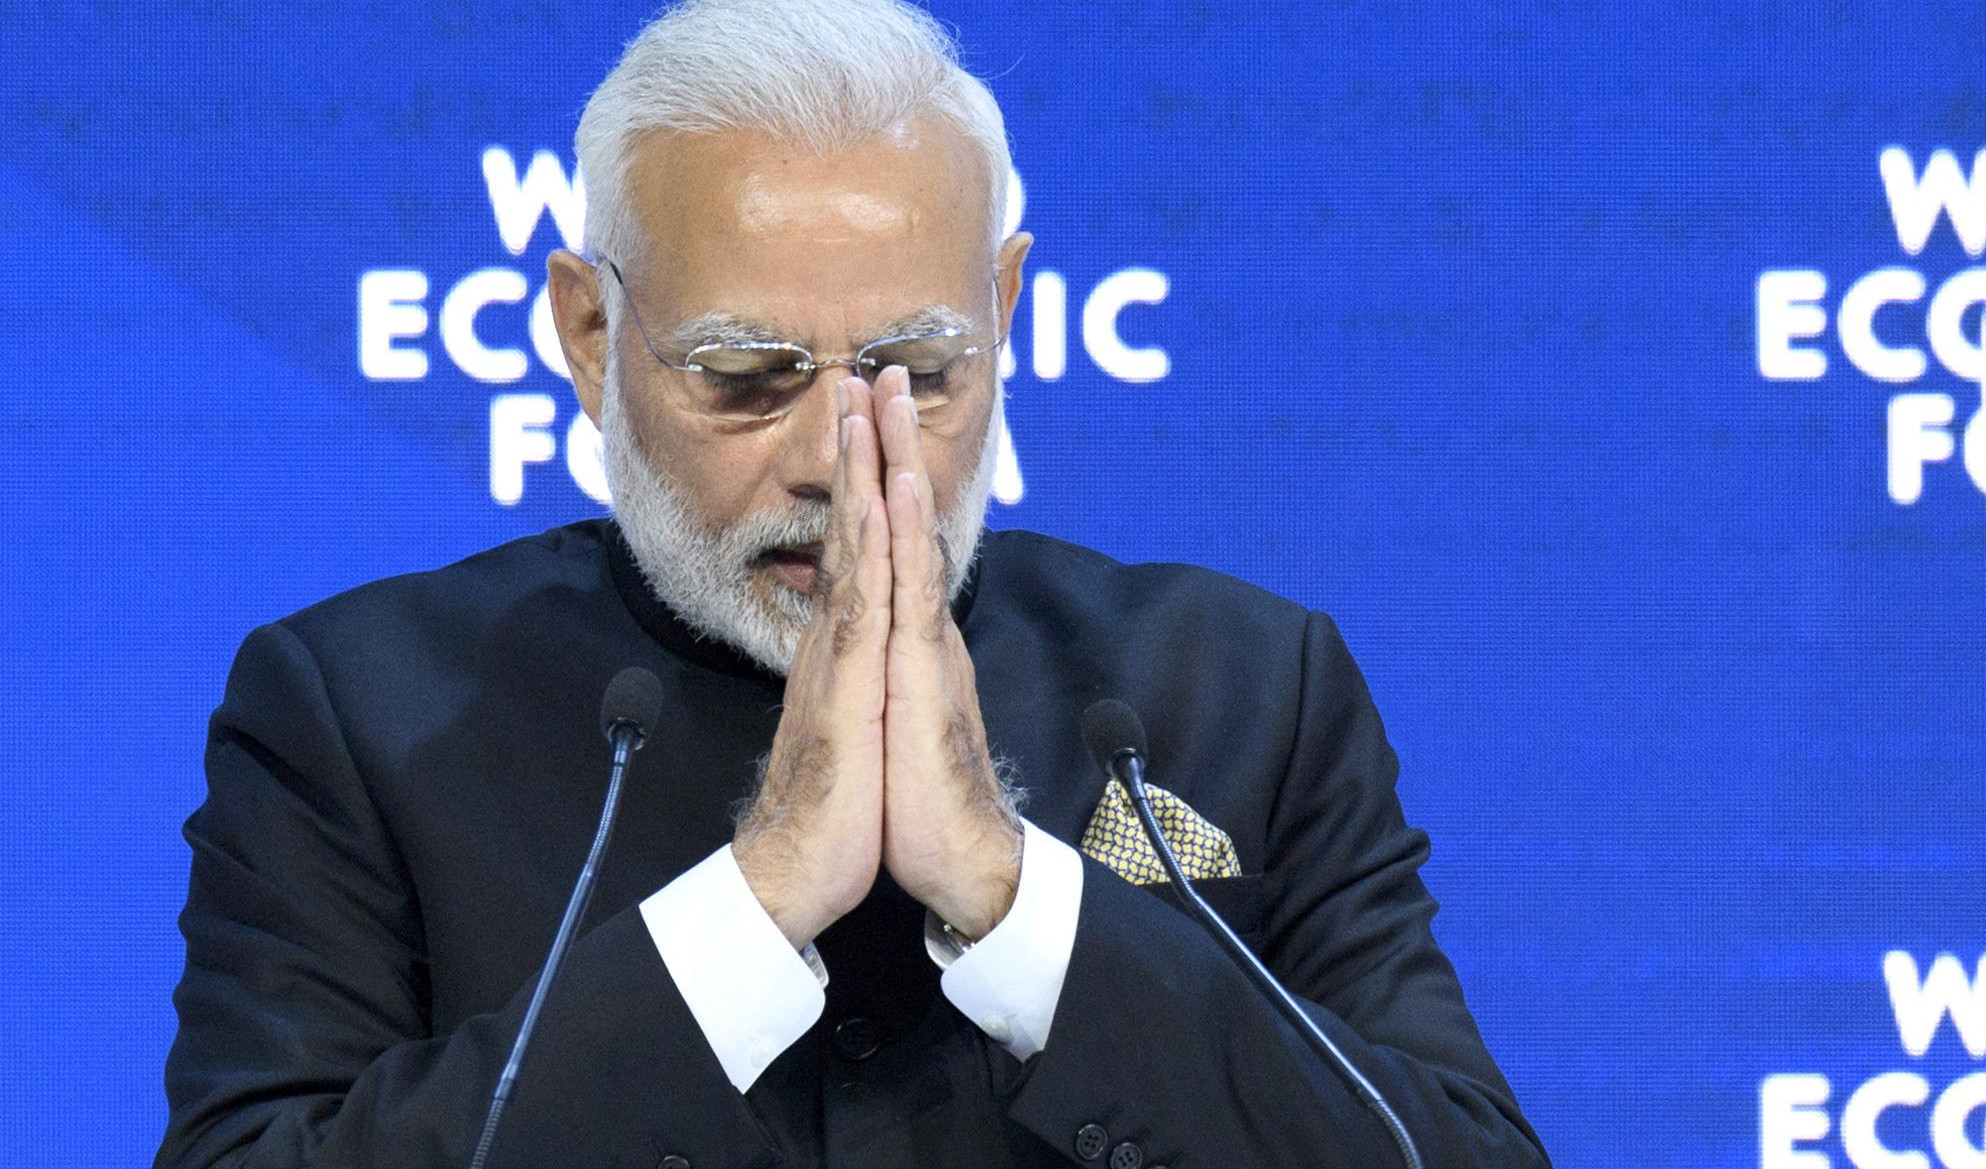 OTVOREN FORUM U DAVOSU, Modi upozorava na protekcionizam